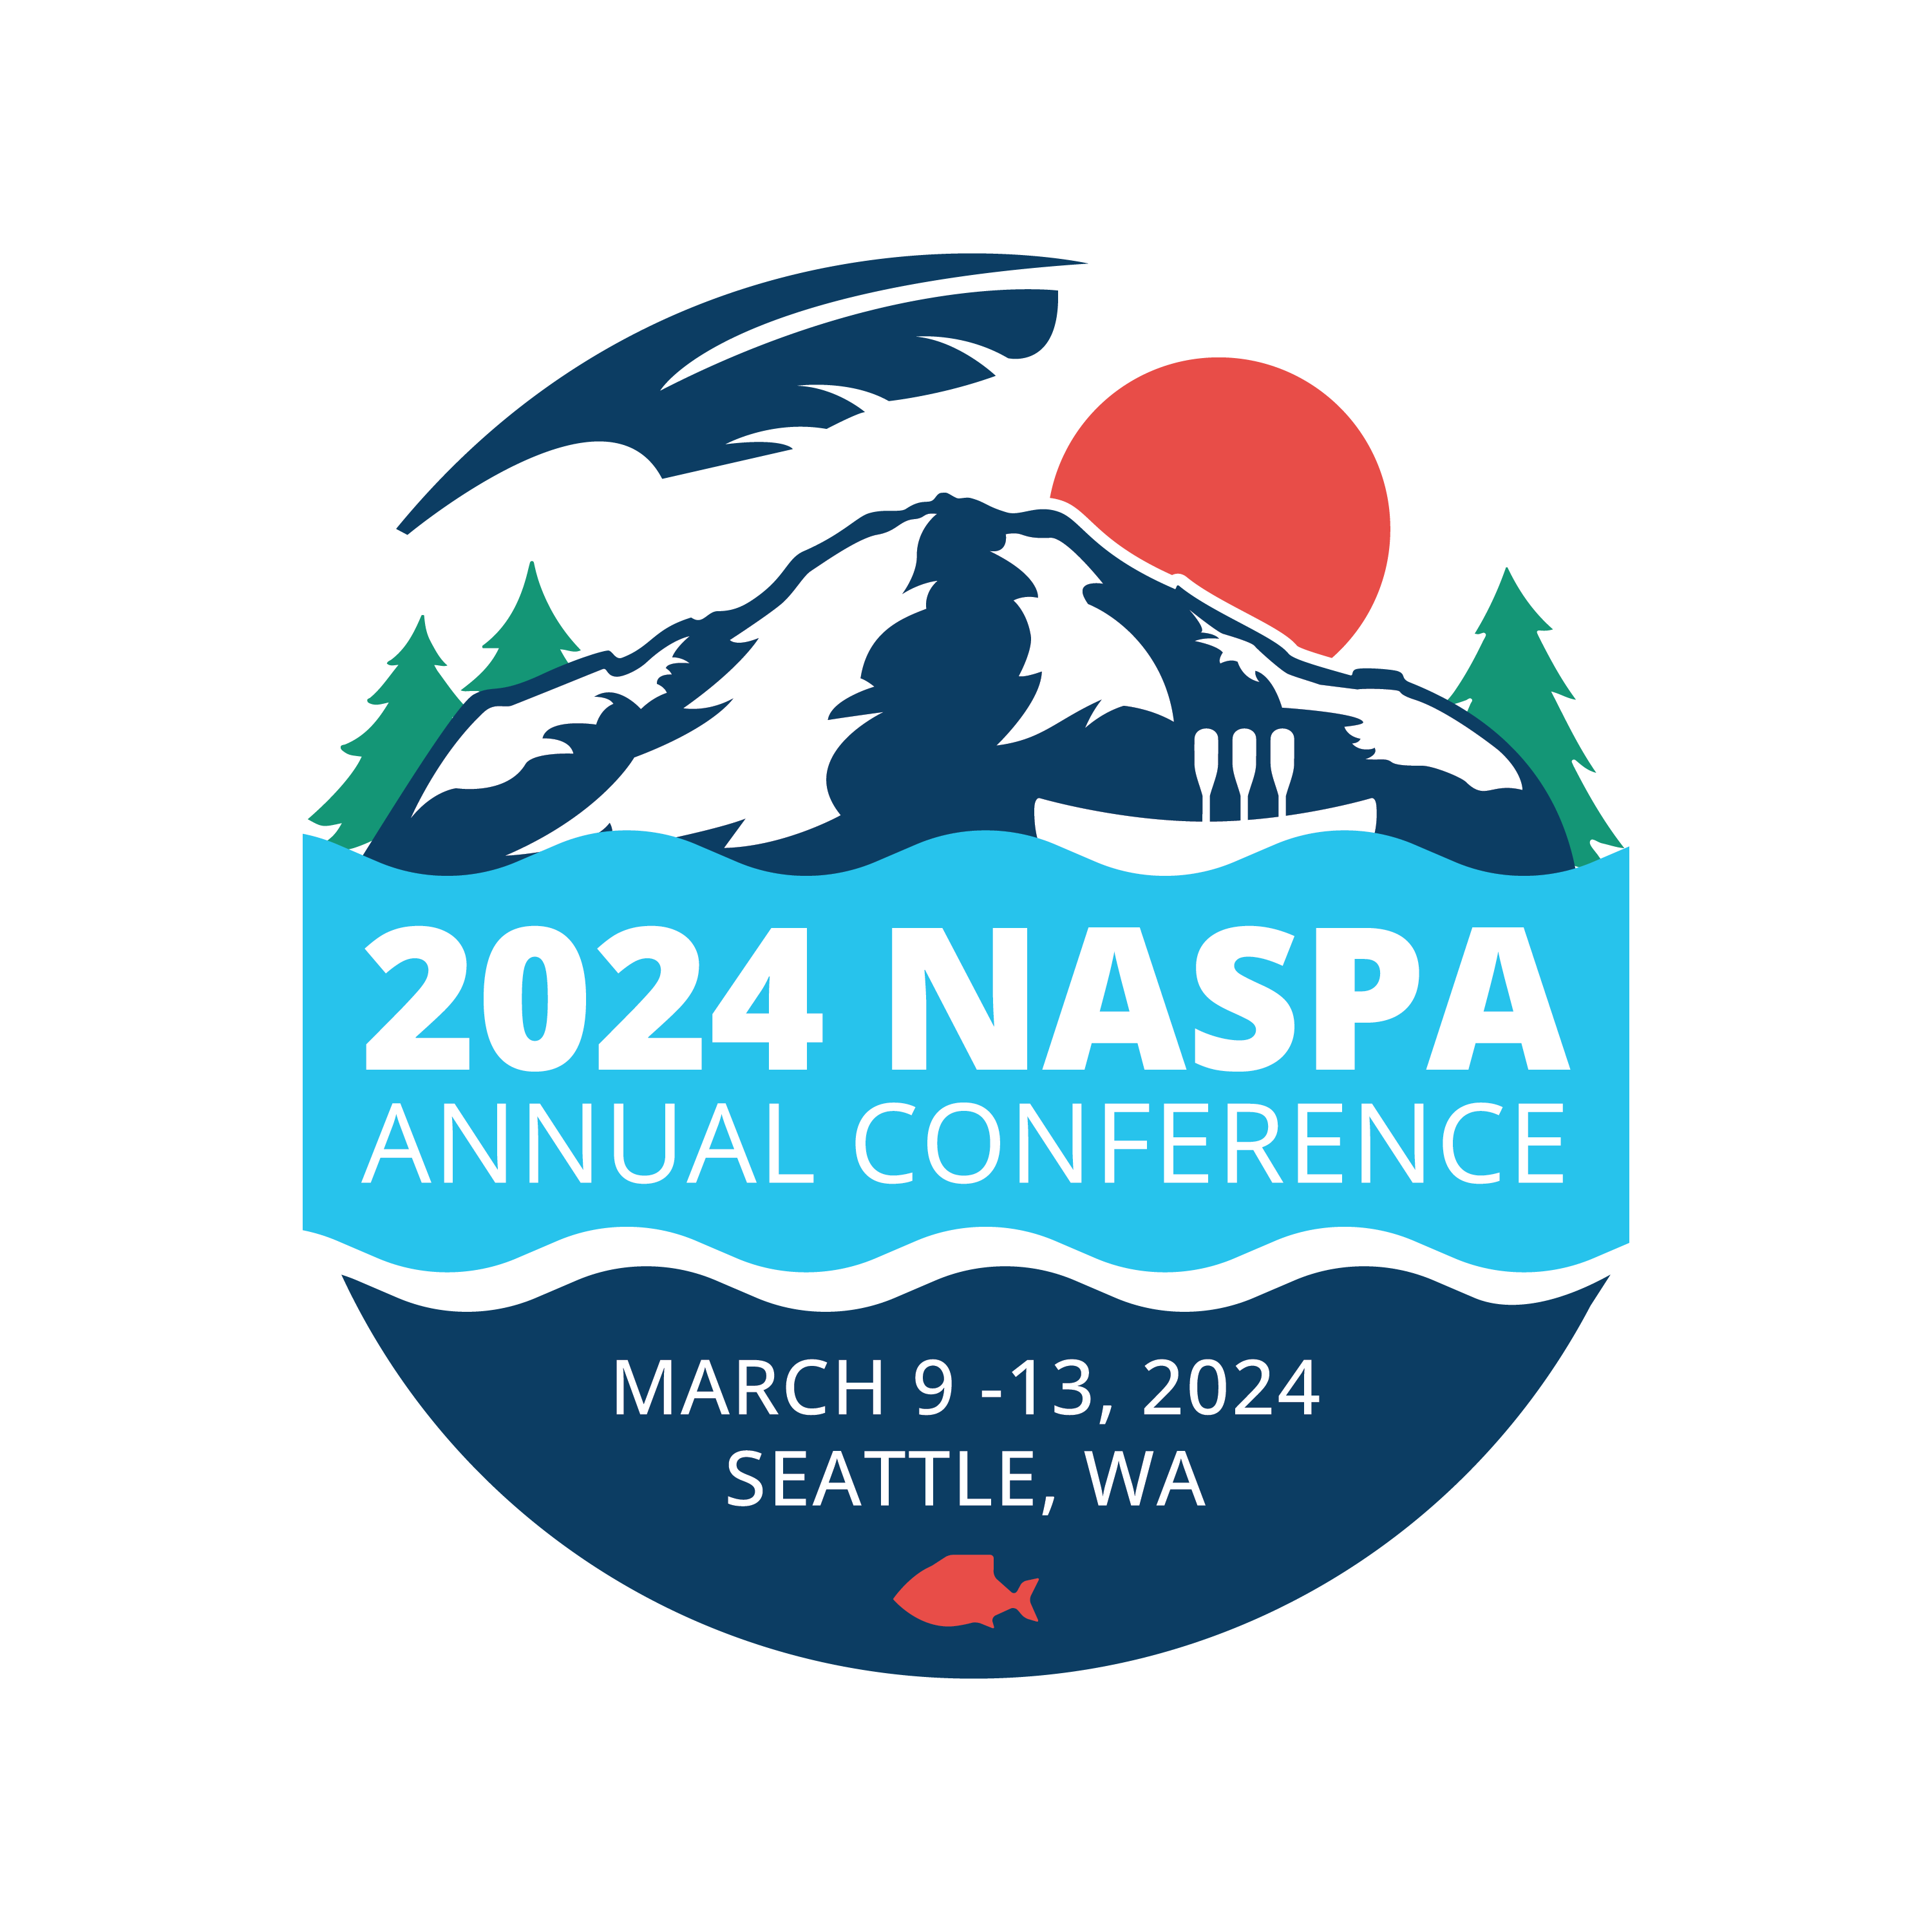 Conferences 2024 NASPA Annual Conference